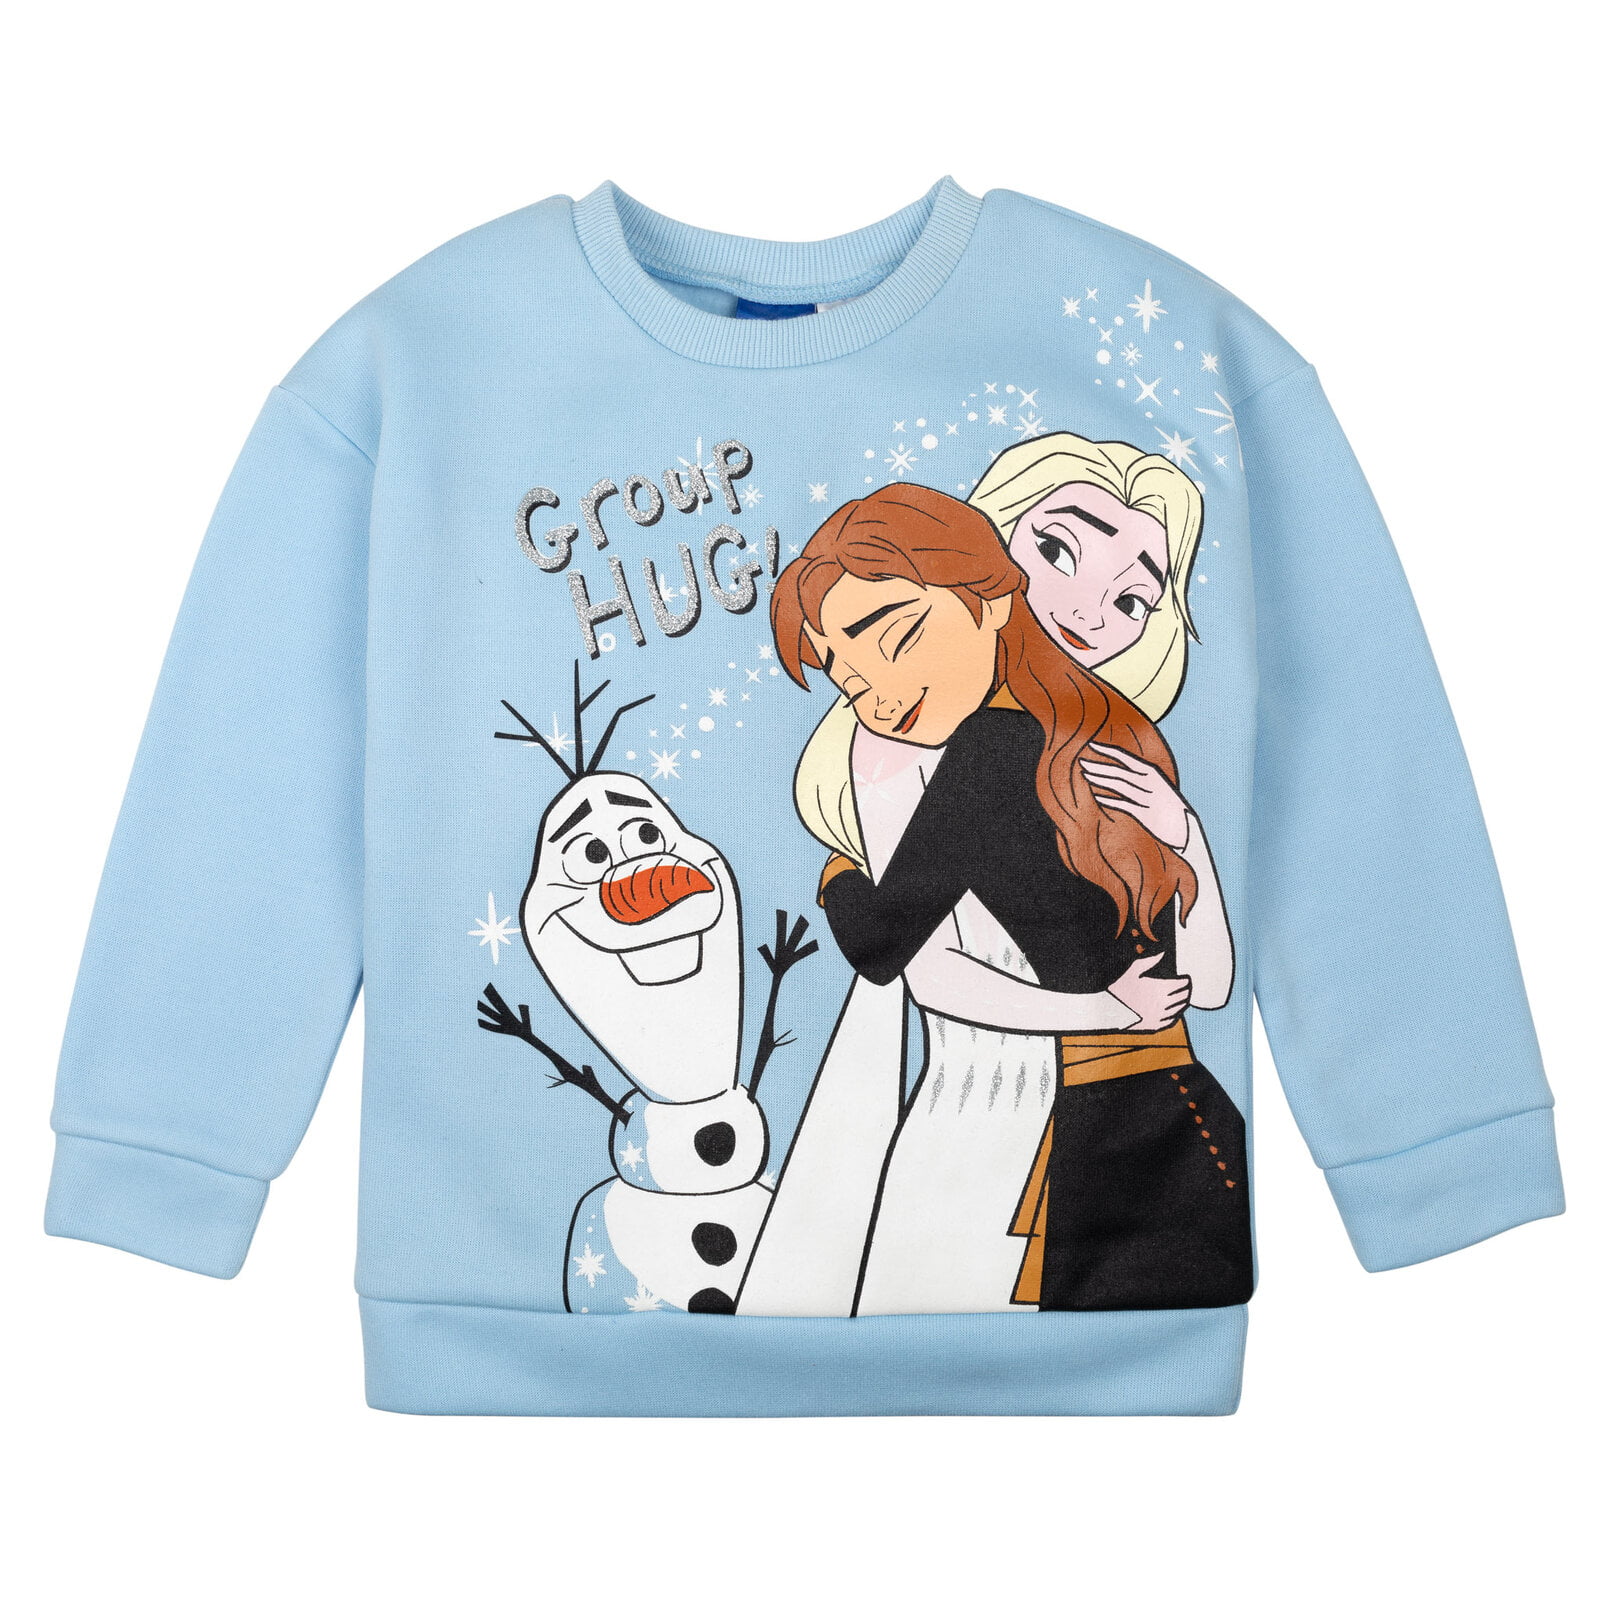 Disney Frozen Elsa Big Girls Long Sleeve Fleece Peplum T-Shirt Leggings Set  Blue 8